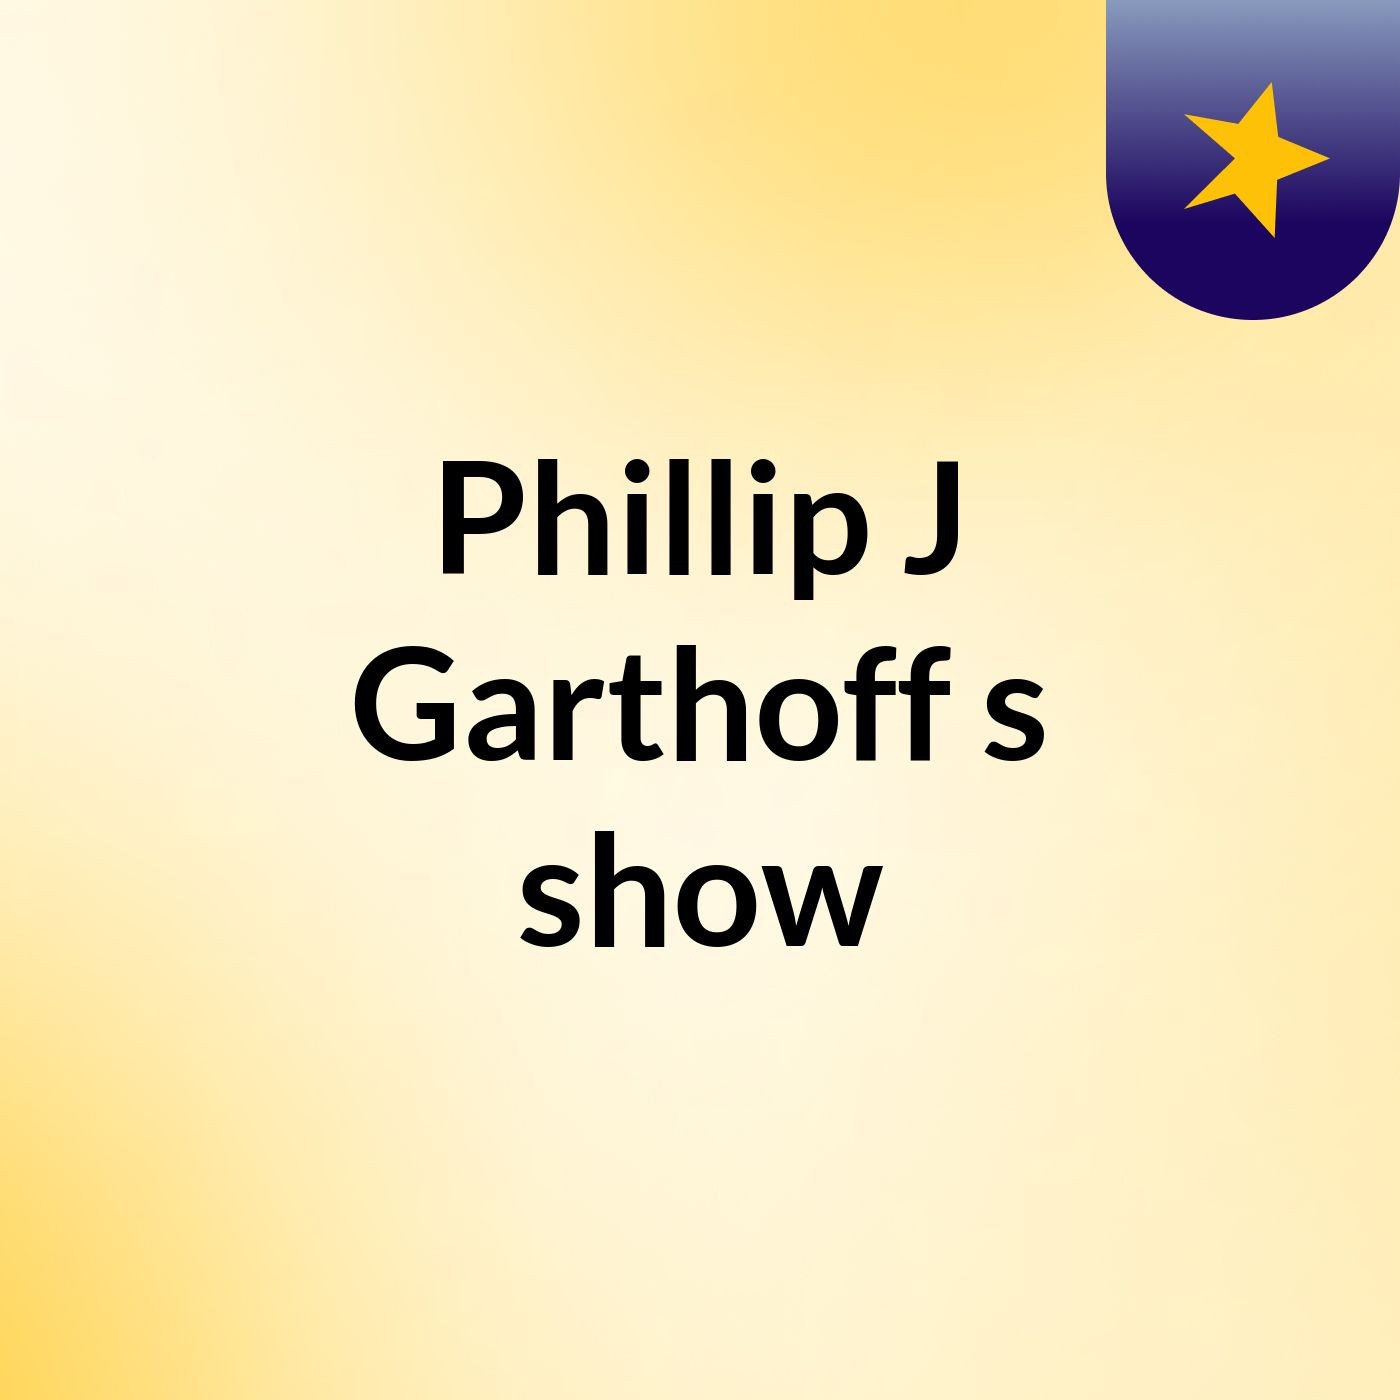 Episode 5 - Phillip J Garthoff's show